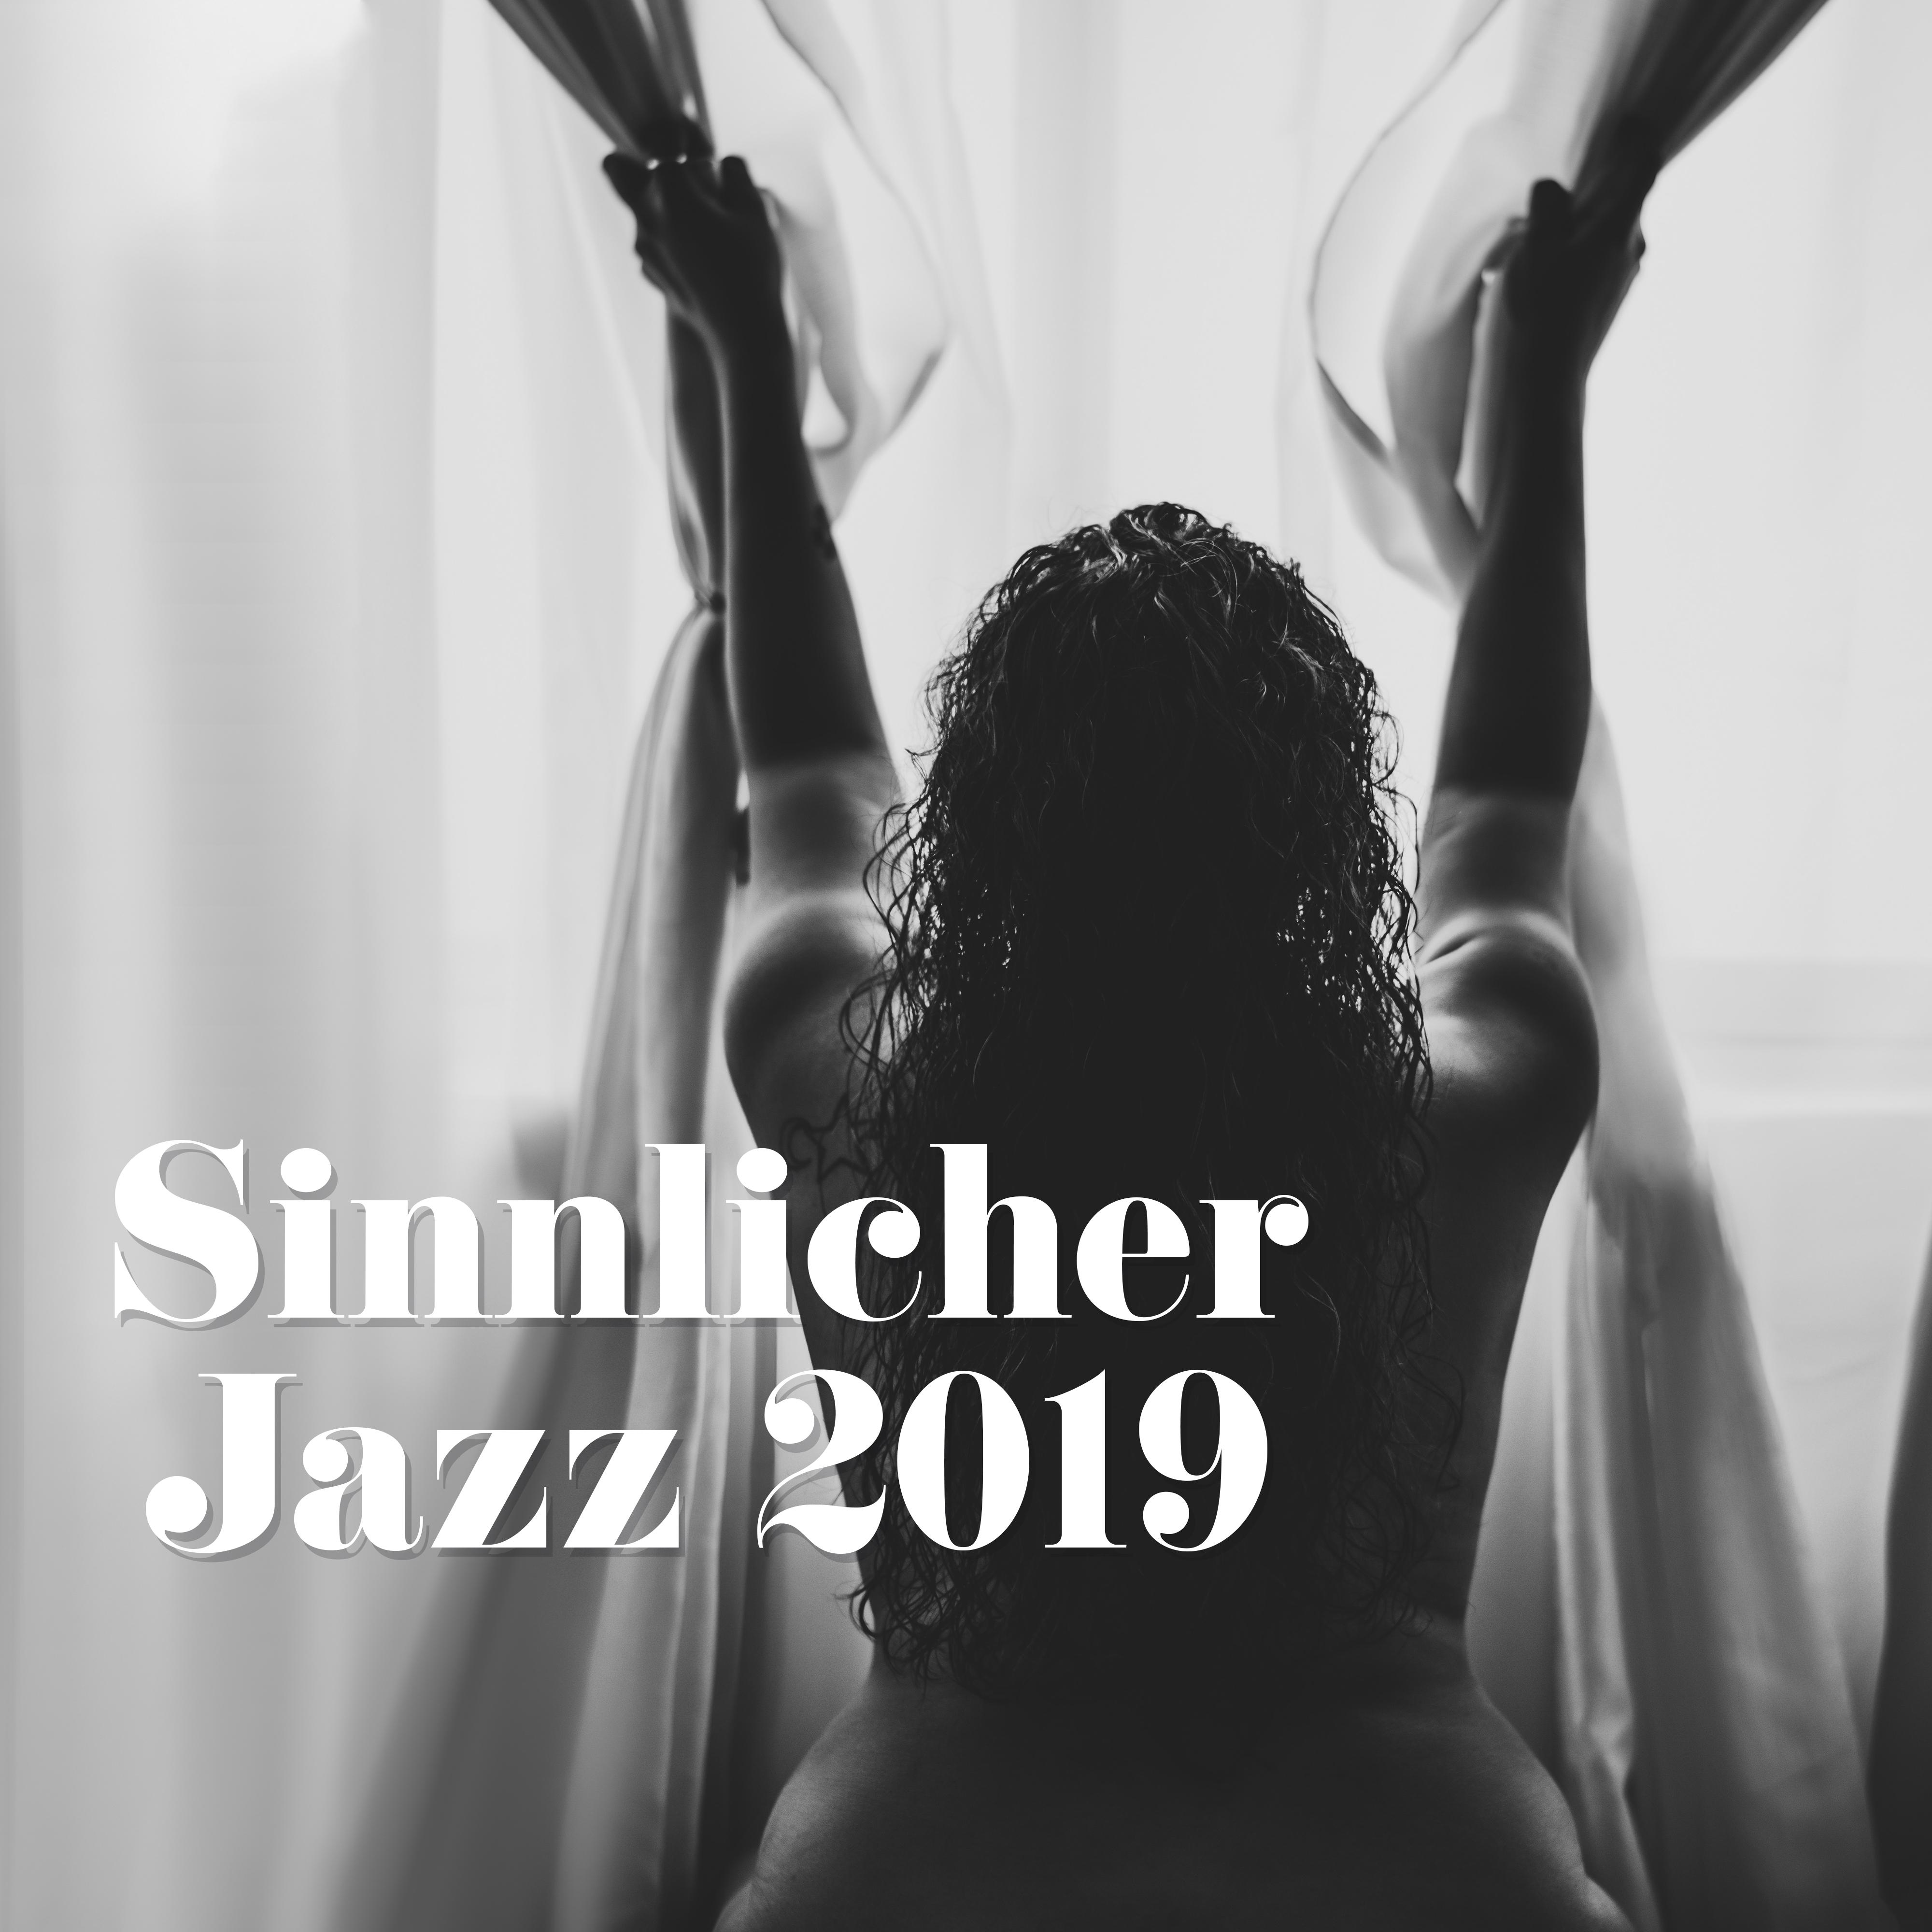 Sinnlicher Jazz 2019  Romantische Musik